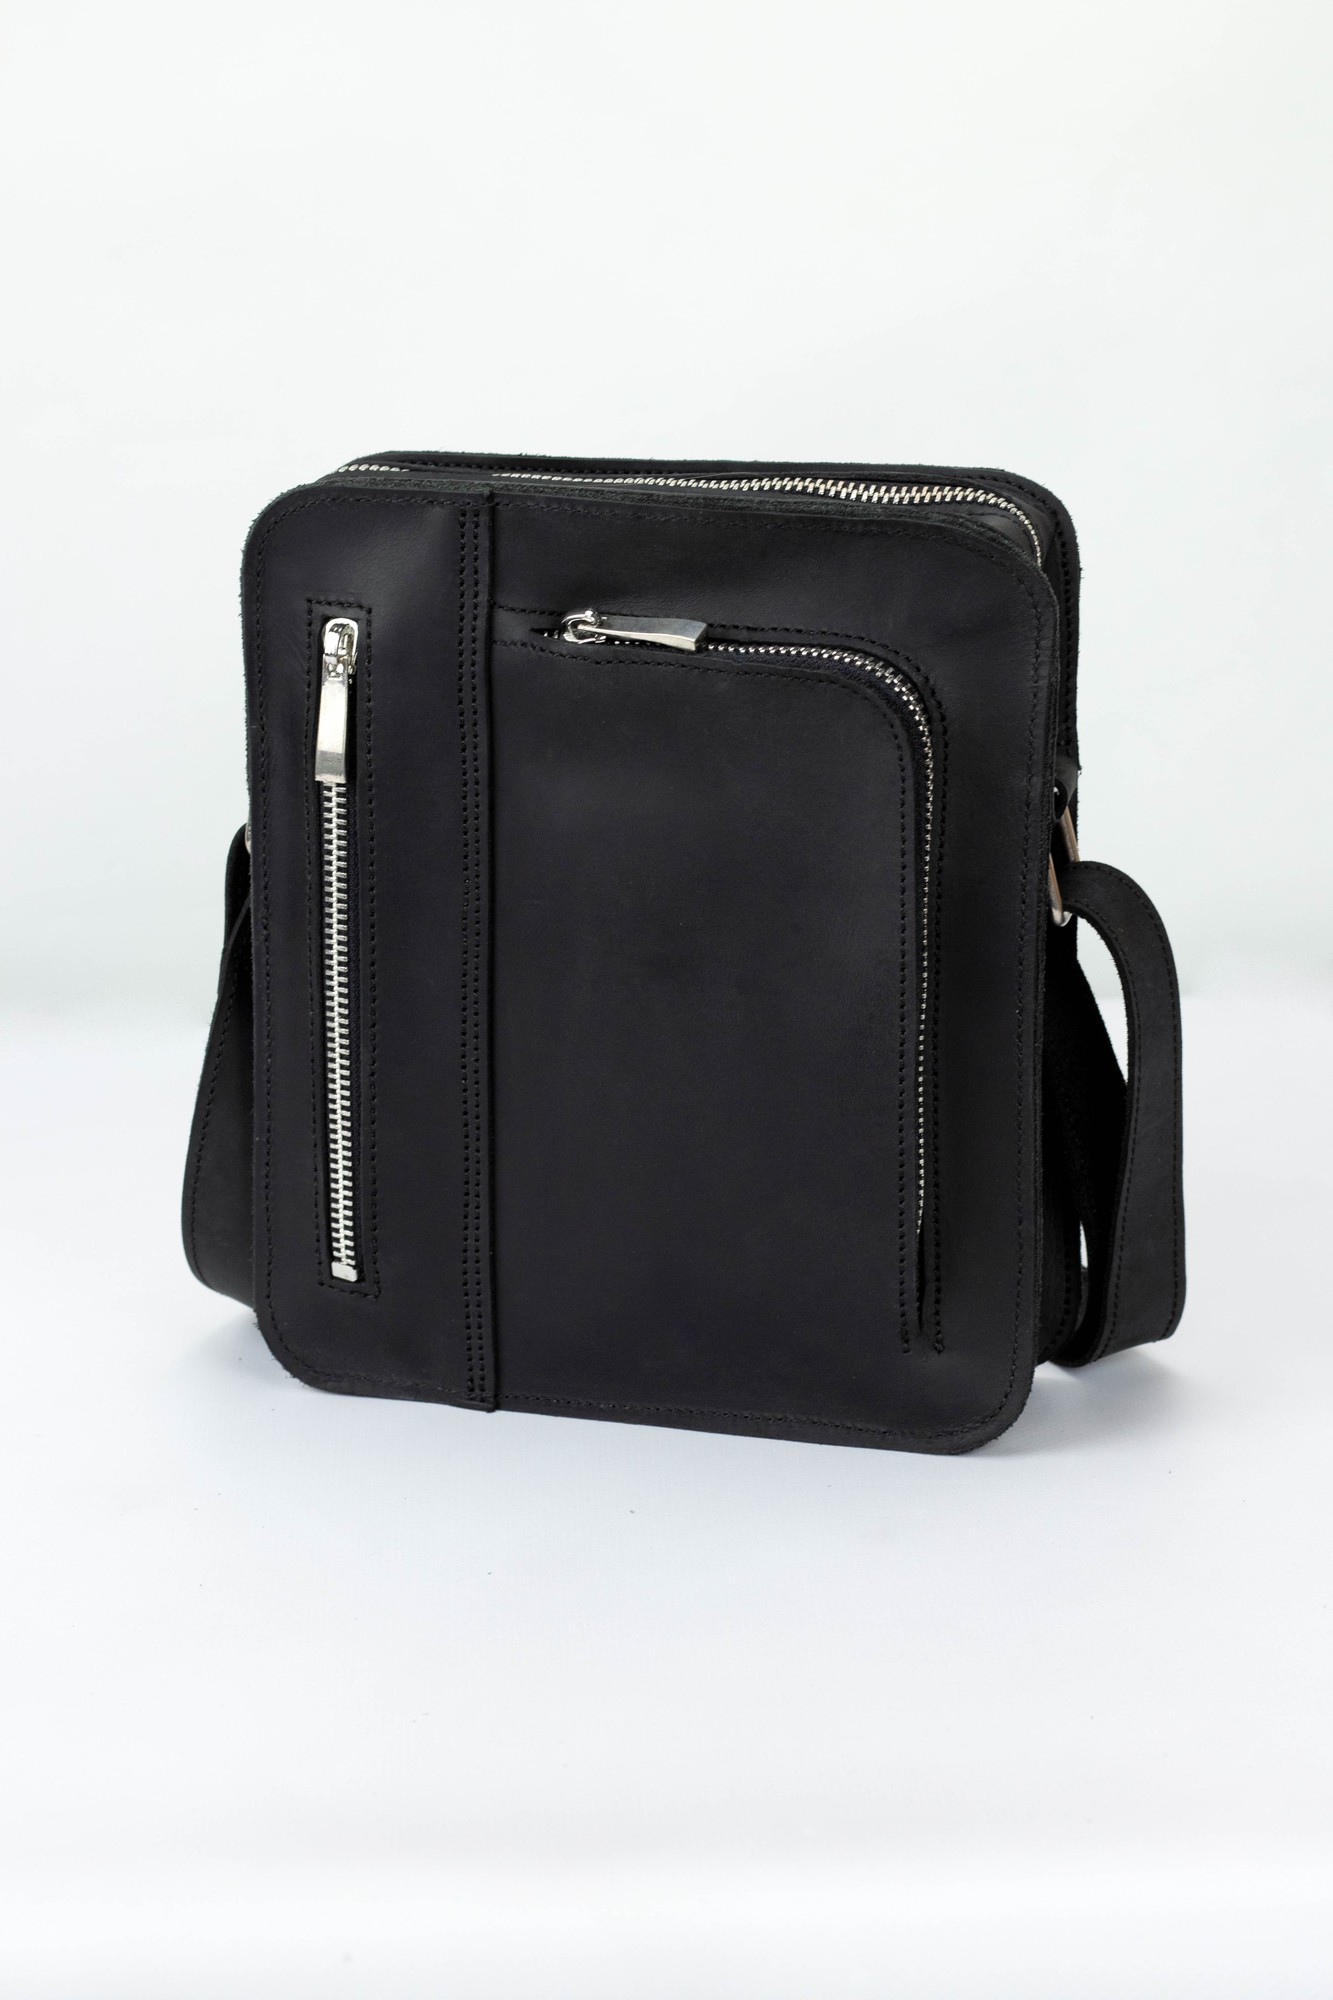 Leather bag for men with pocket for phone and shoulder strap / black ...